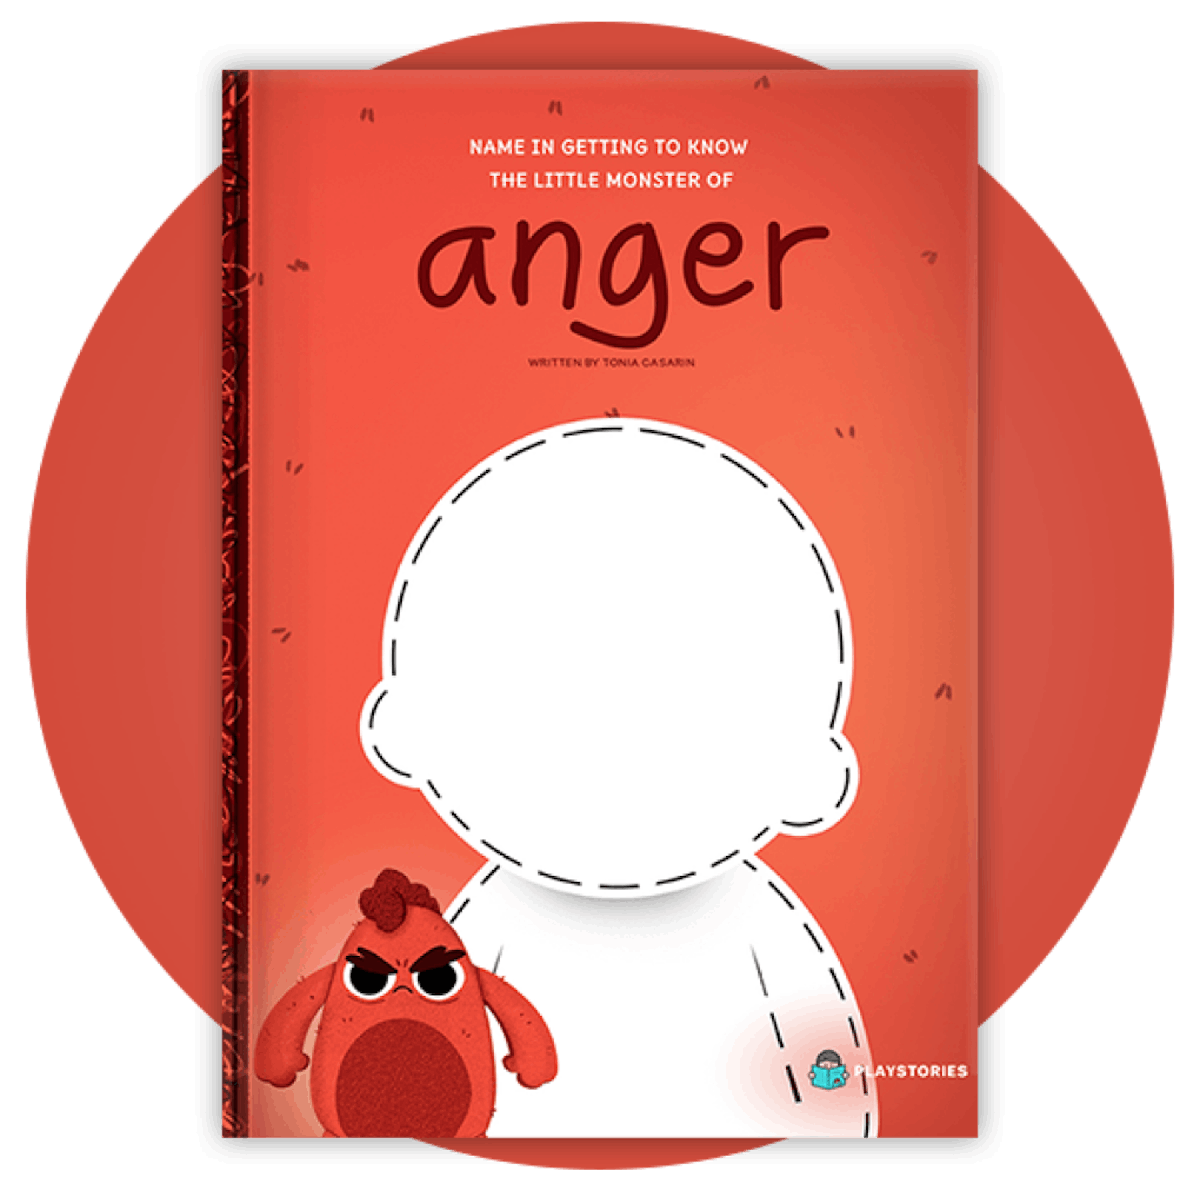 The Little Monster of Anger